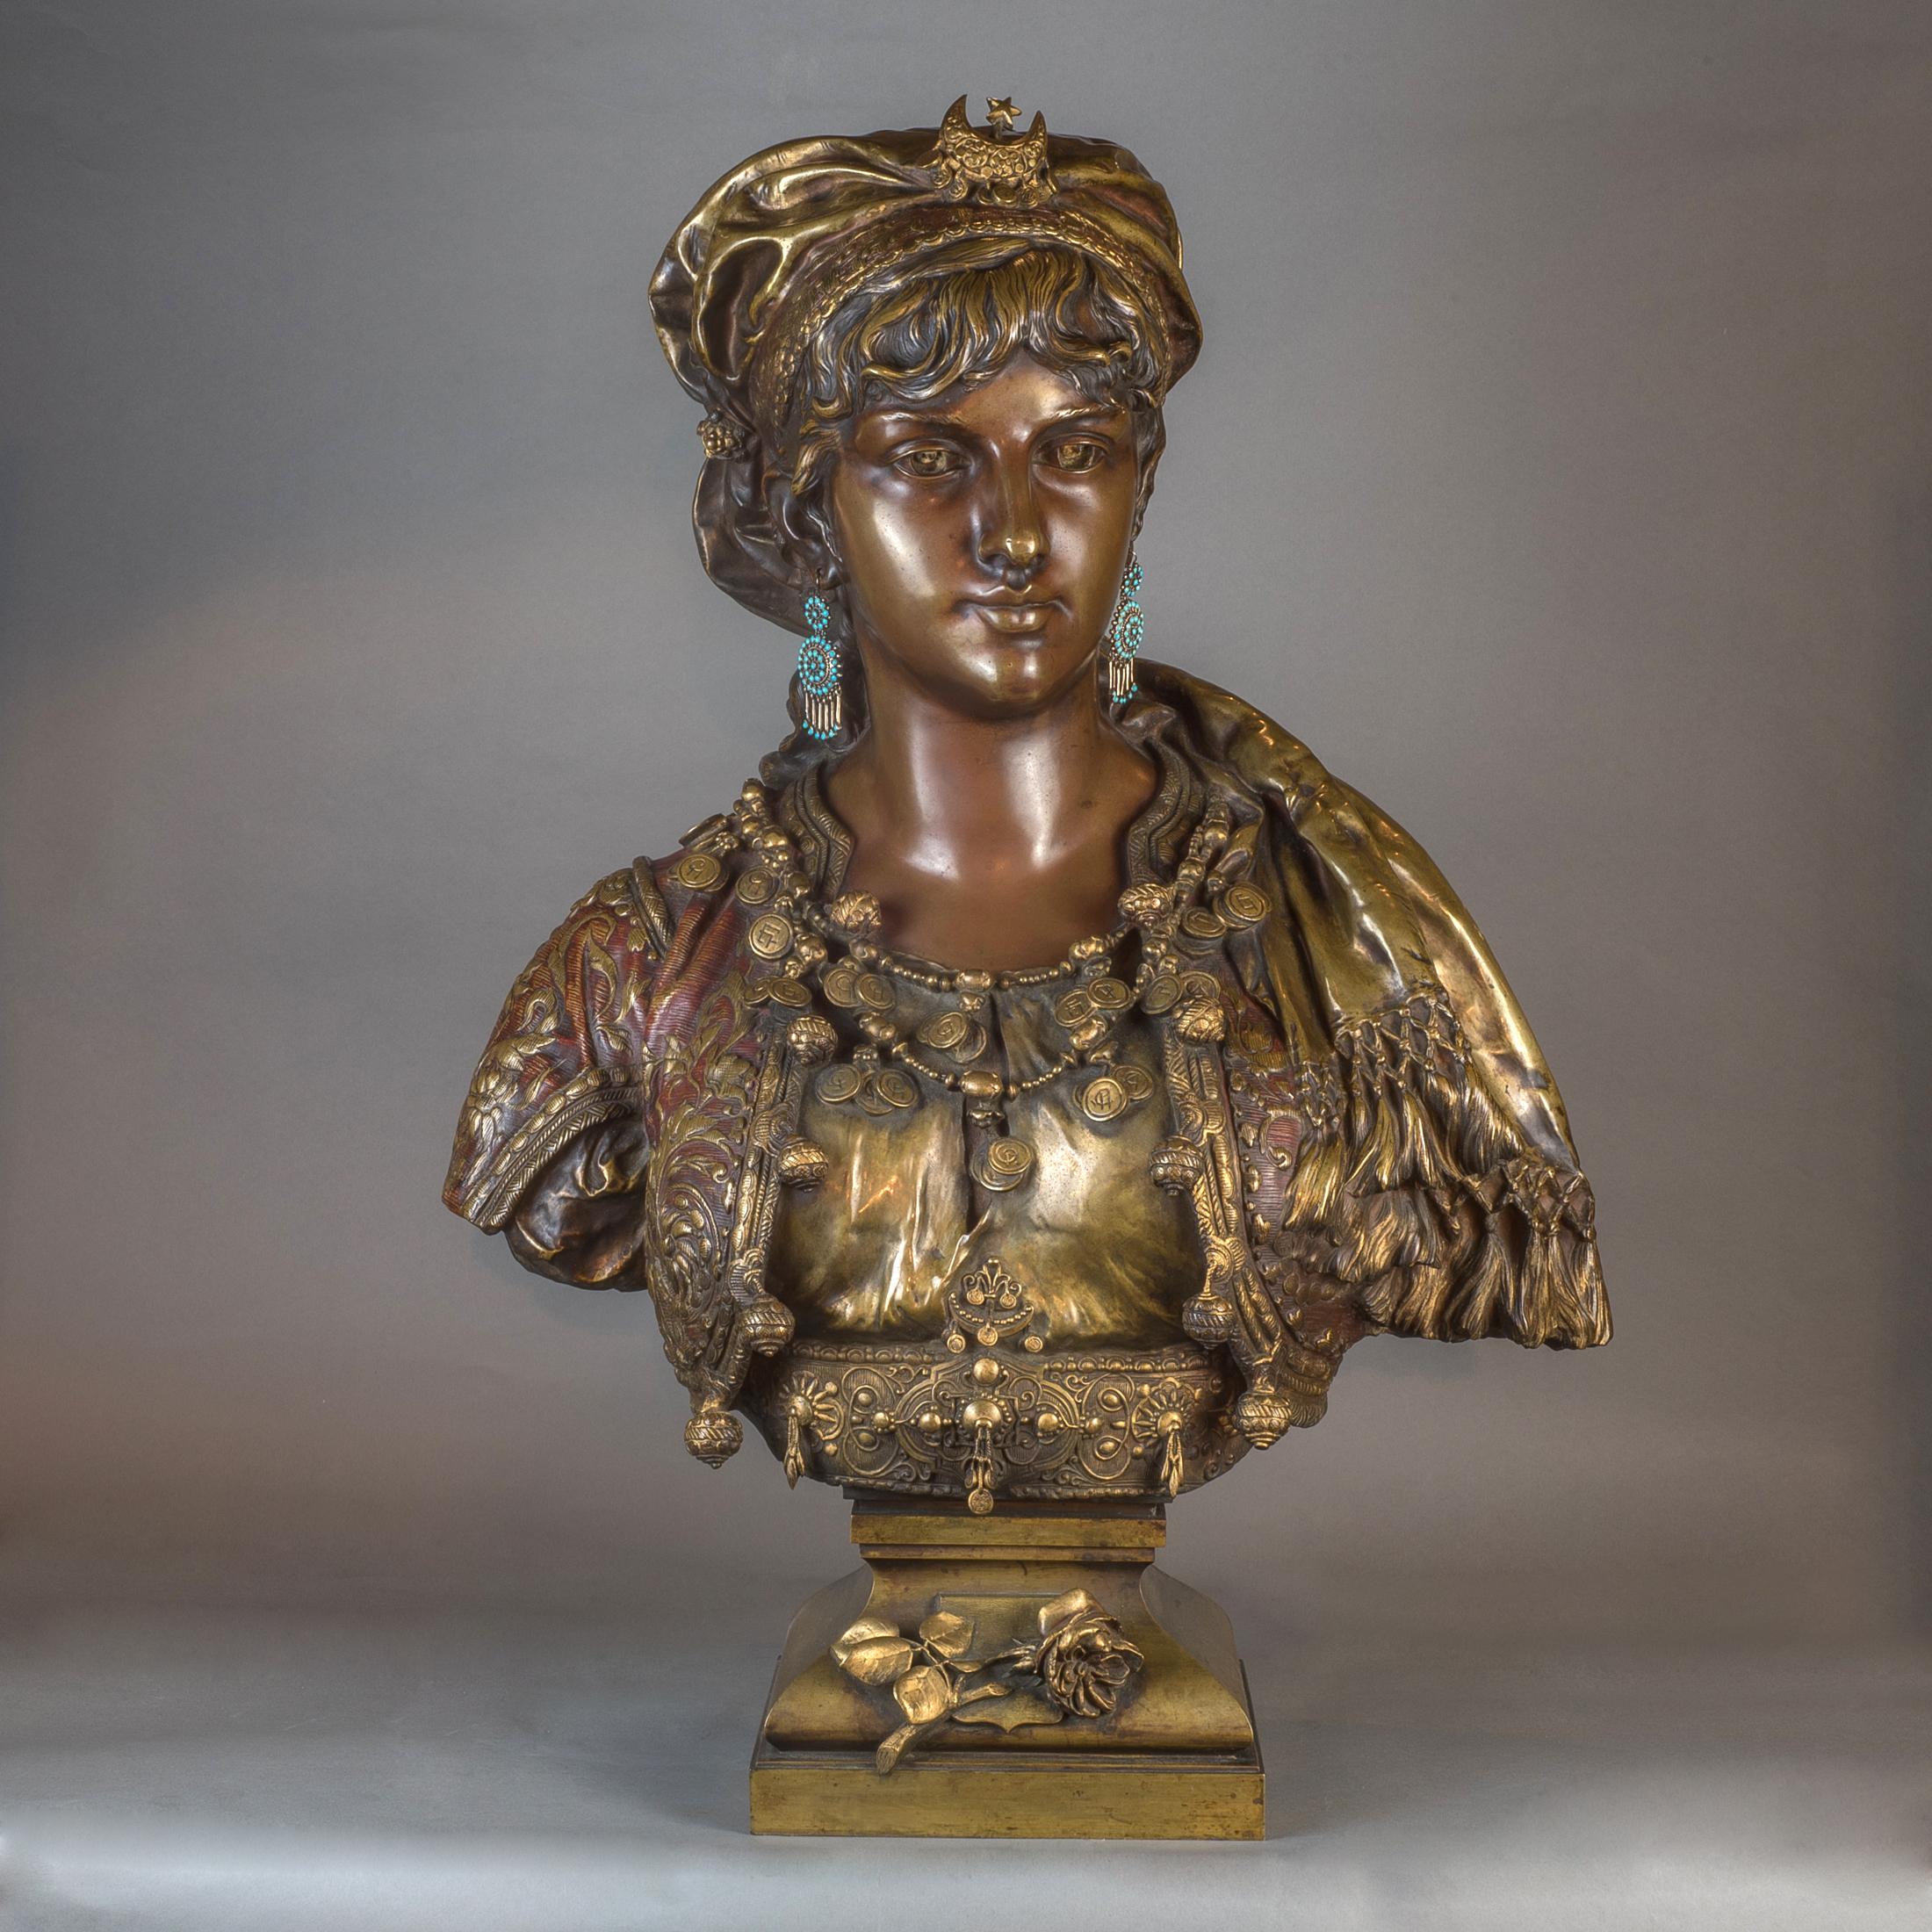 Buste en bronze polychrome et patiné de belle qualité représentant une princesse orientaliste. 
La princesse porte une luxueuse veste en brocart d'or et d'argent, dont les patines imitent habilement les fils d'or et d'argent. L'approche mixte